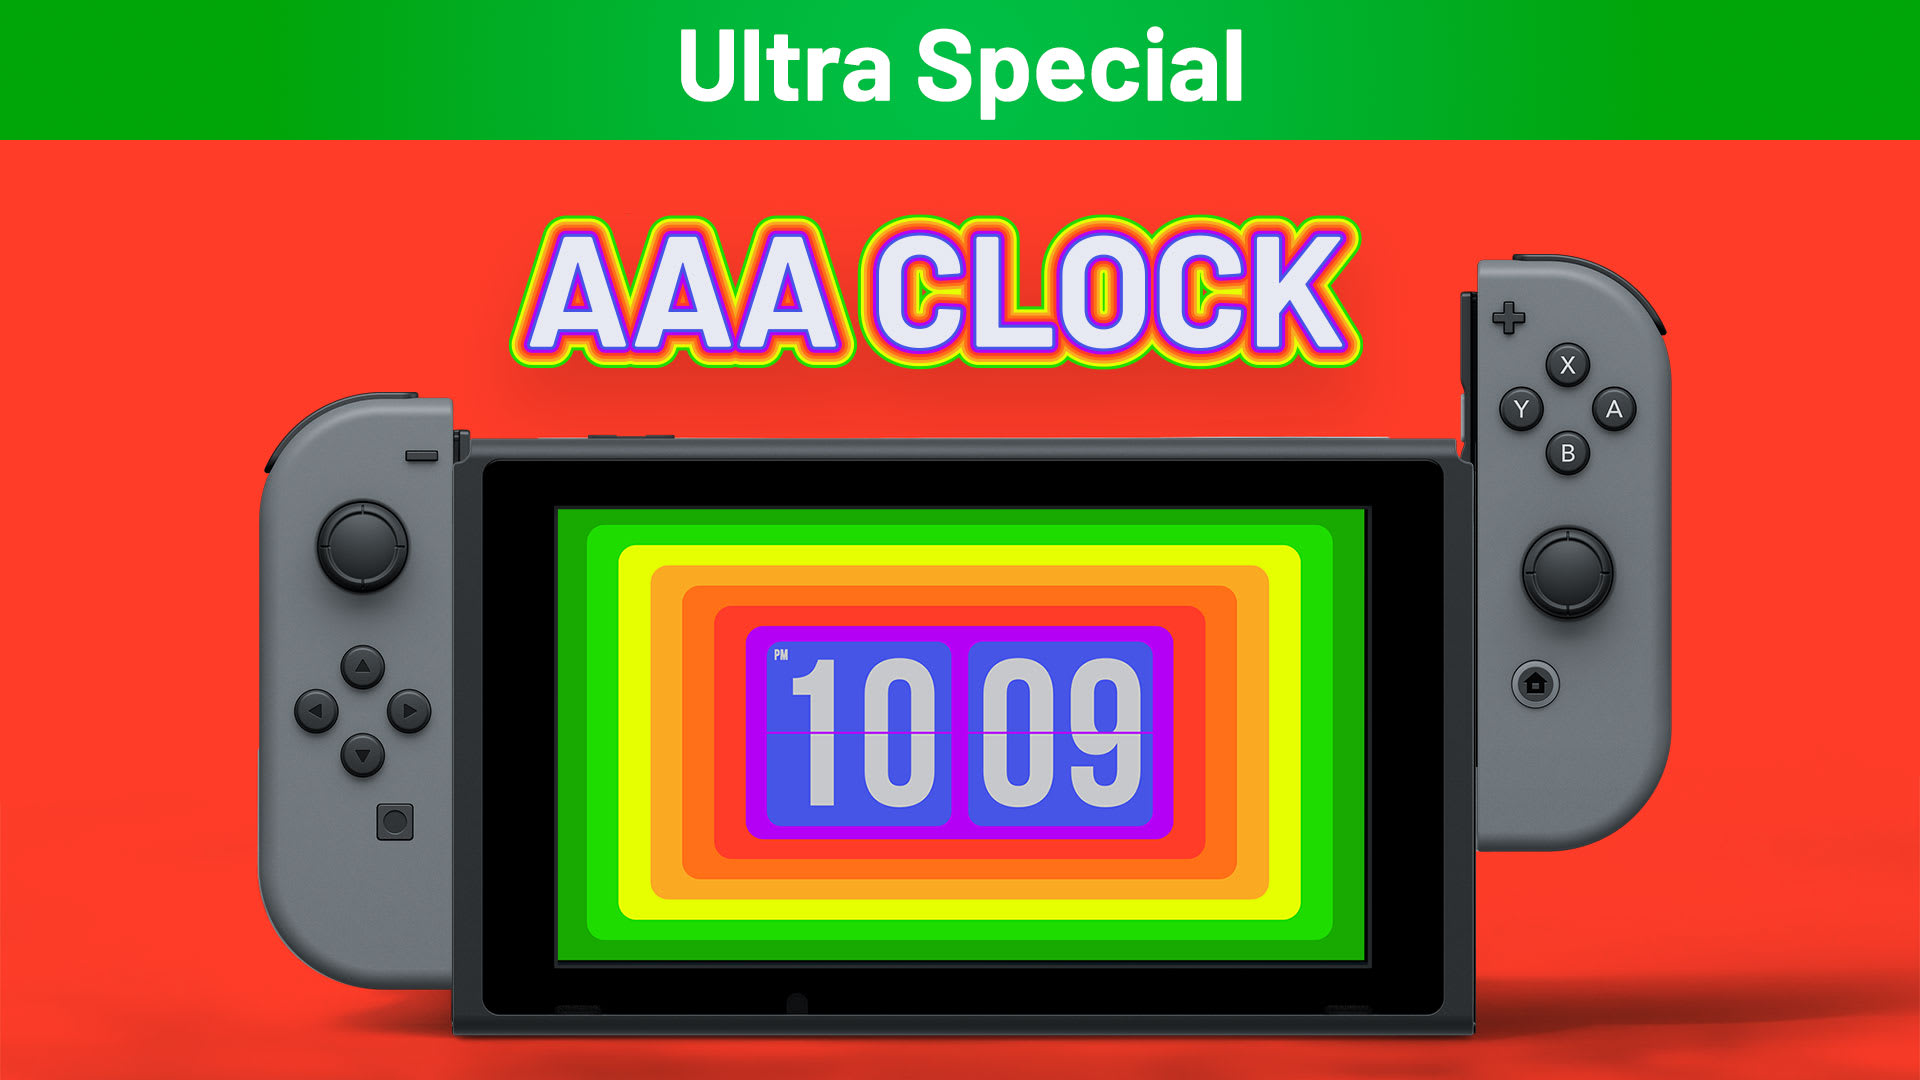 AAA Clock Ultra Special